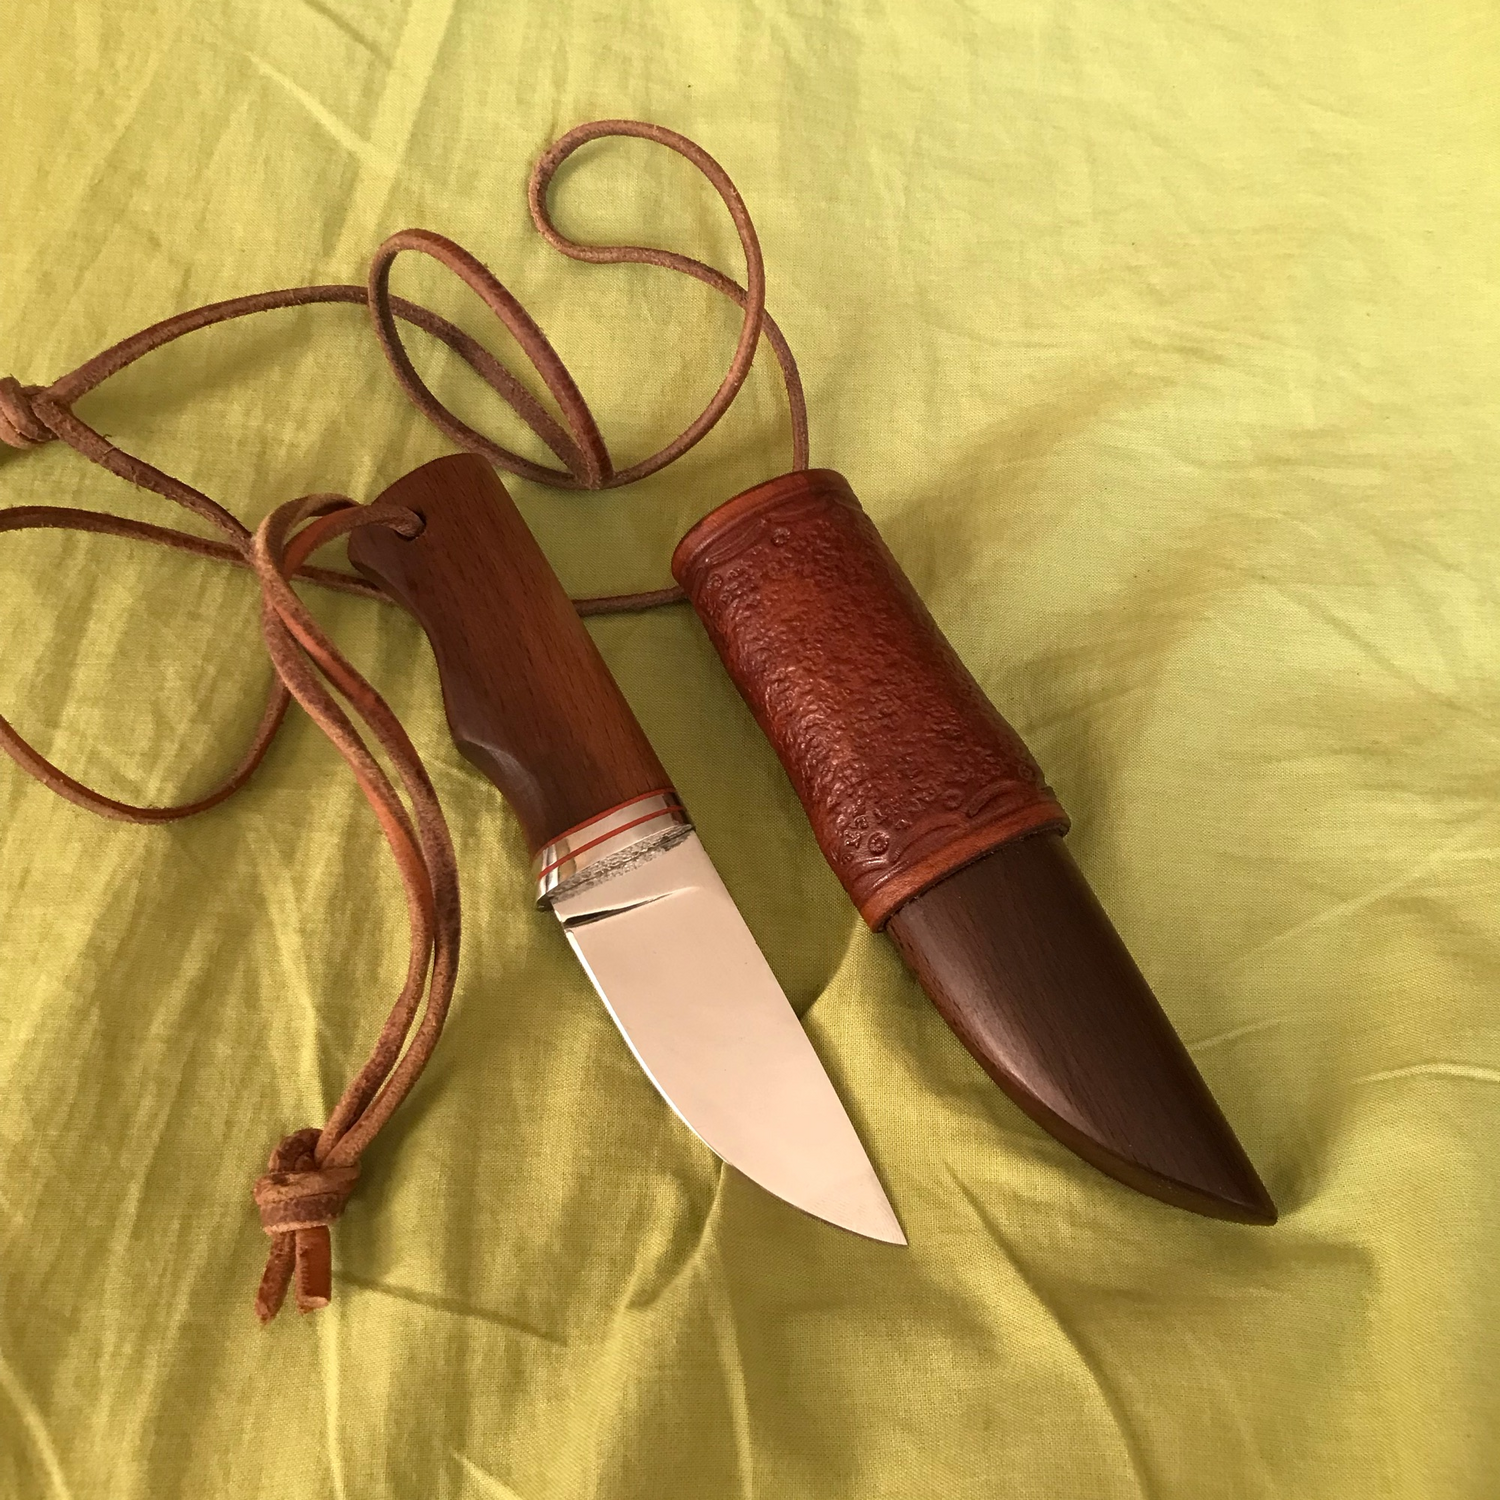 Photo №1 к отзыву покупателя Evgenij о товаре Нож нагрудный скинер (подарок мужчине охотнику, рыбаку)